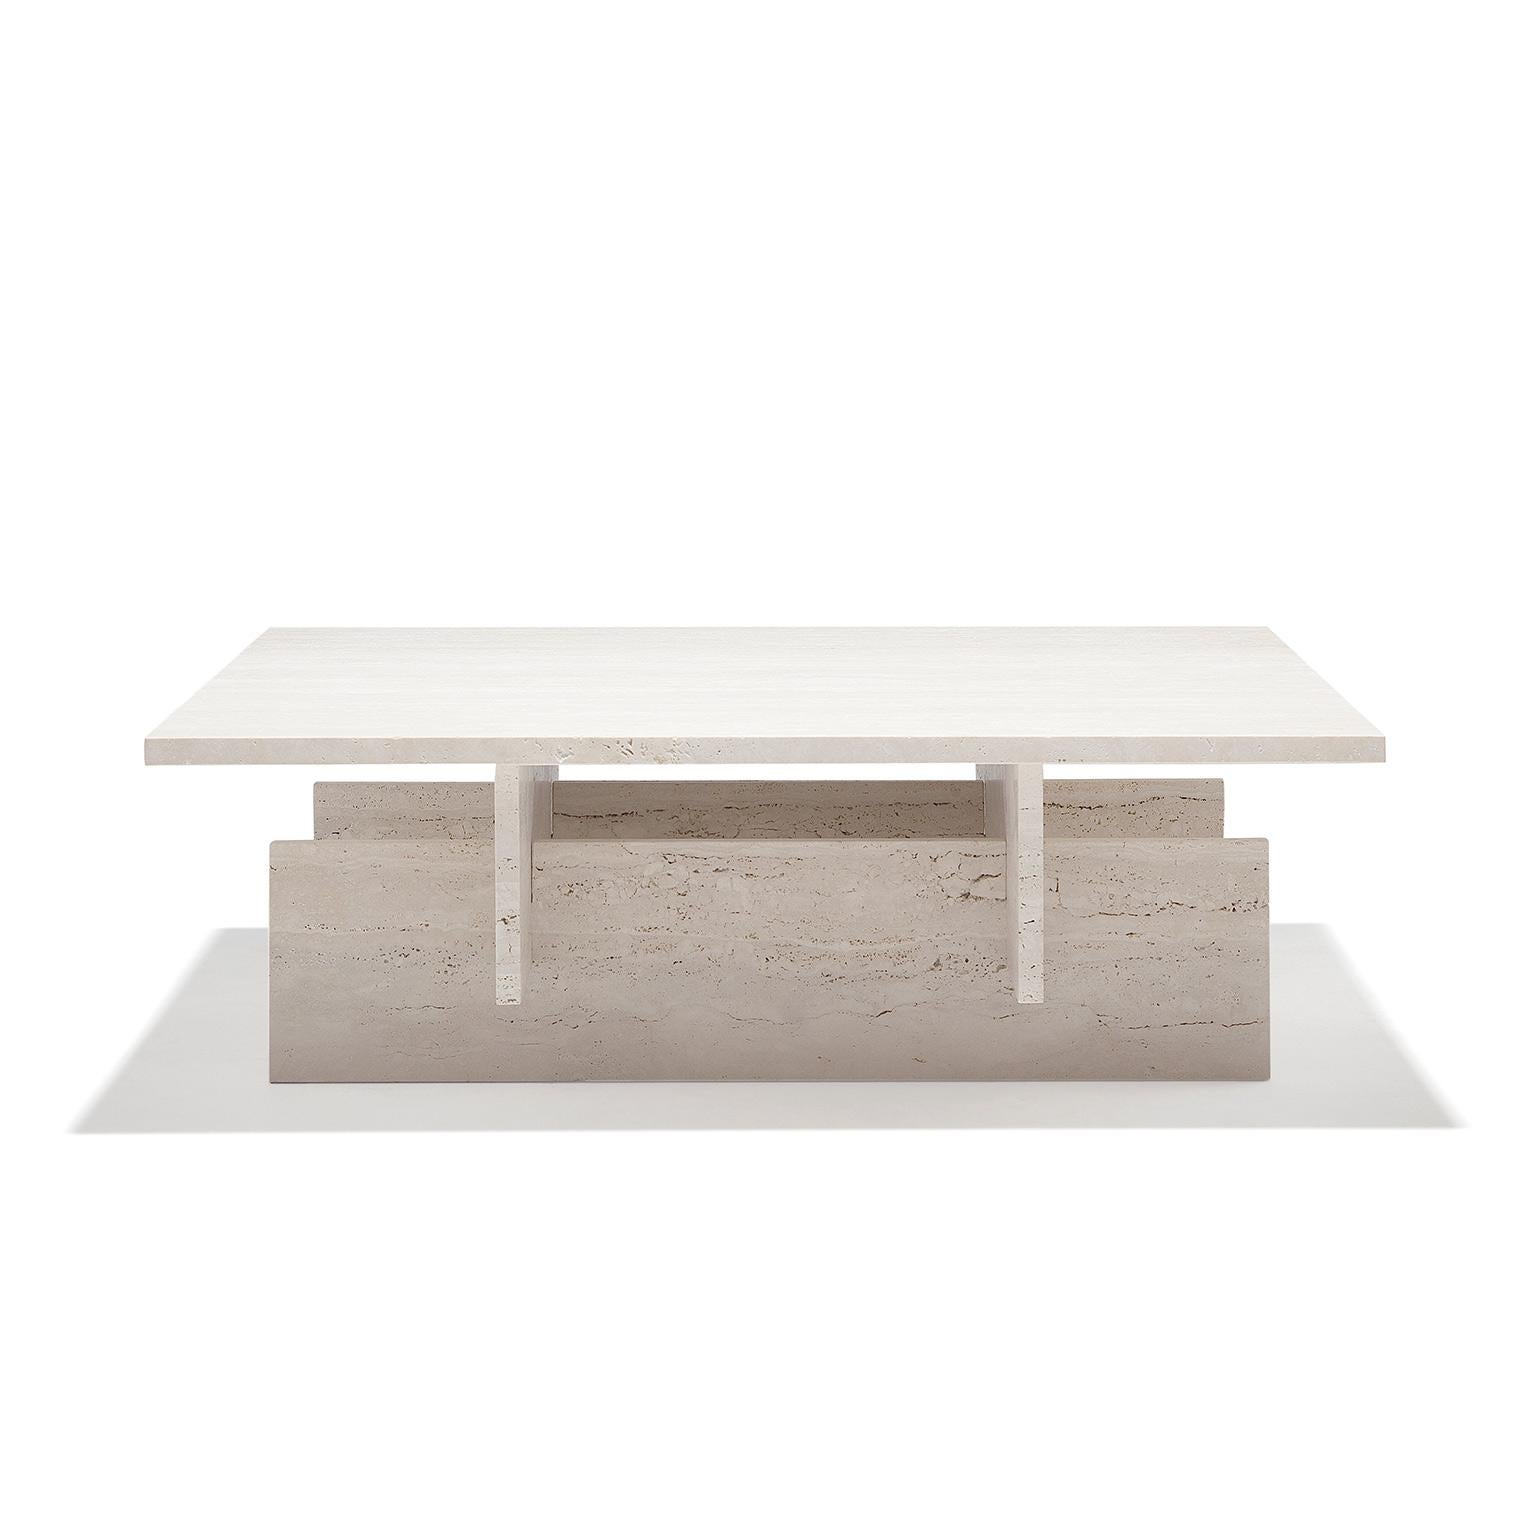 Der Fit Table ist ein minimalistisch gestalteter Couchtisch aus behandeltem Travertinmarmor. Dieser Couchtisch besteht aus fünf Marmorteilen, die alle auf logische und harmonische Weise zusammengesetzt sind.
Josep Vila Capdevila, der Chefdesigner